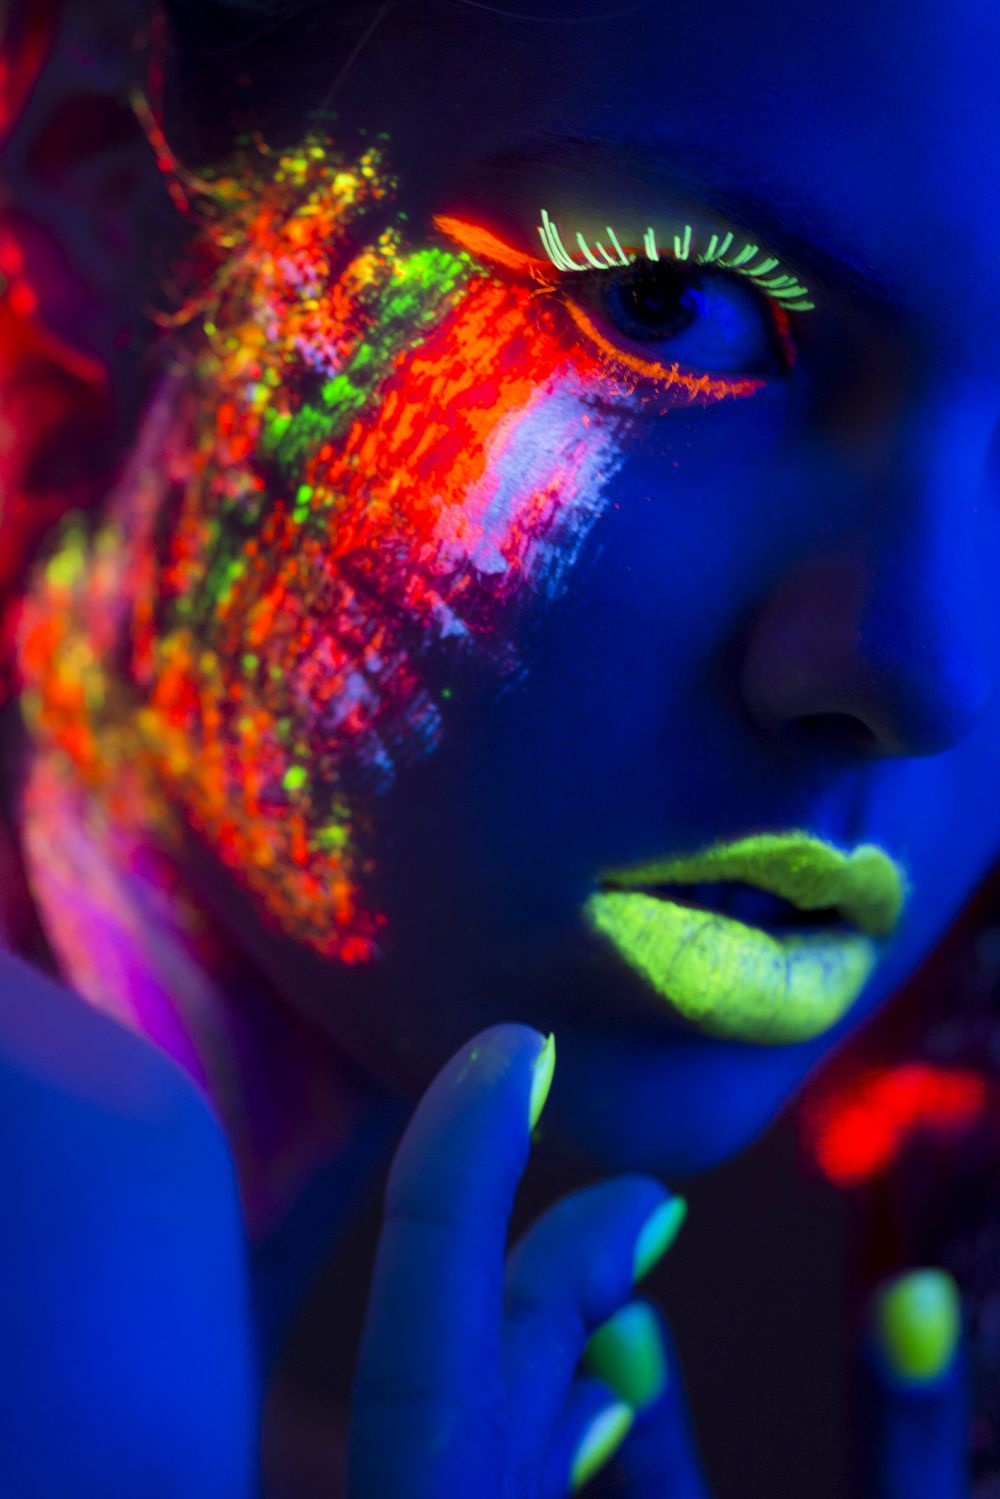 Maquillage fluorescent pour Halloween 2022 : idées géniales pour briller  dans le noir comme une star !